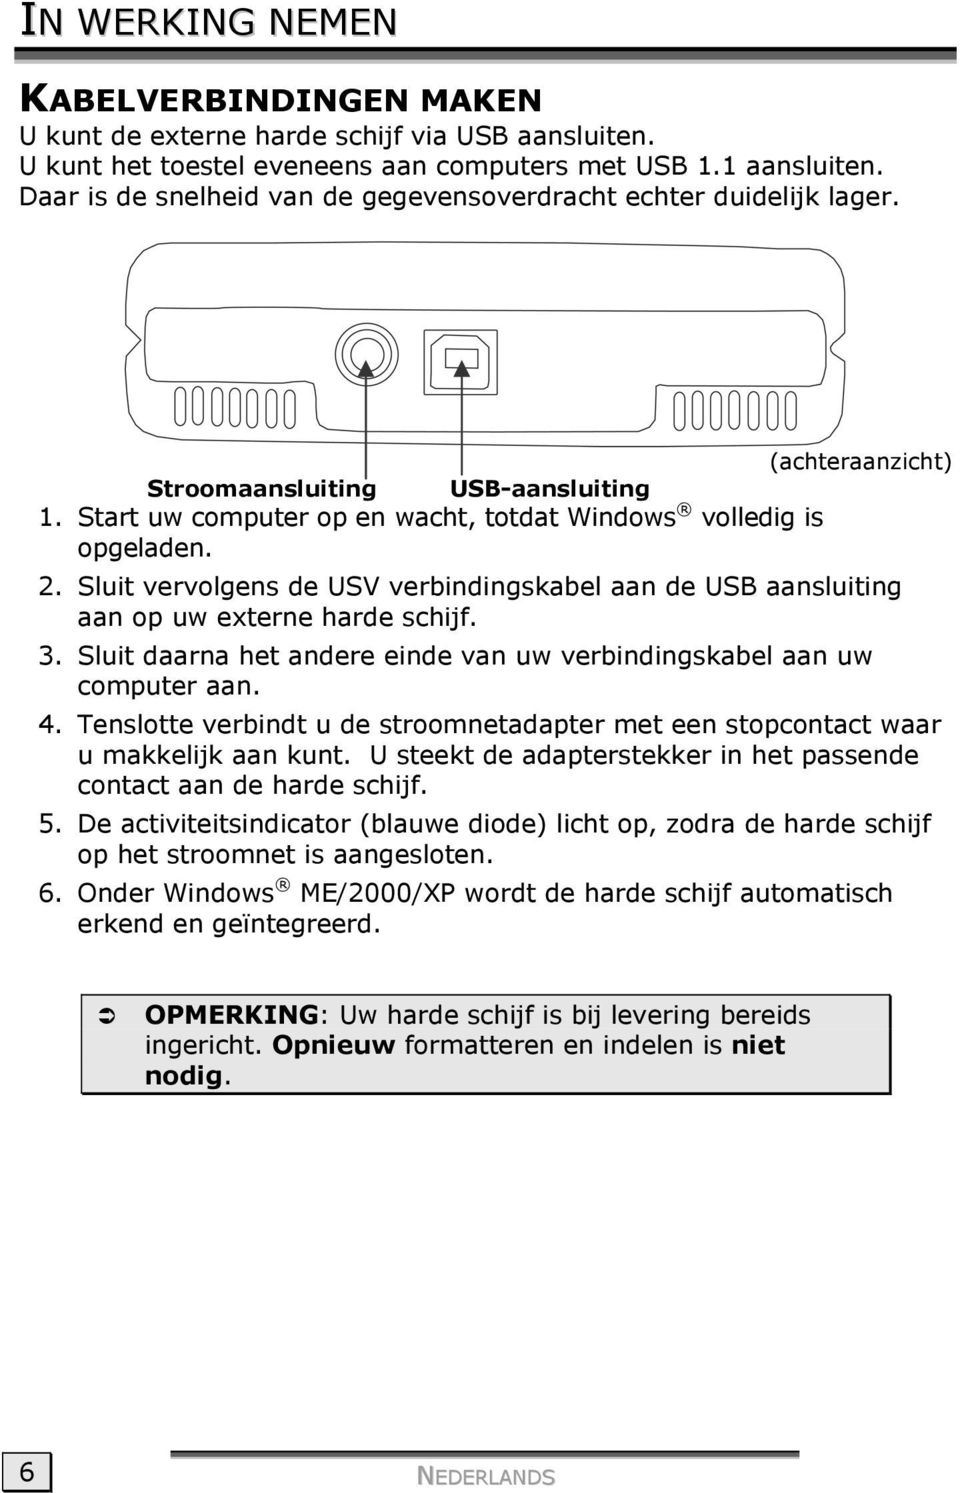 Sluit vervolgens de USV verbindingskabel aan de USB aansluiting aan op uw externe harde schijf. 3. Sluit daarna het andere einde van uw verbindingskabel aan uw computer aan. 4.